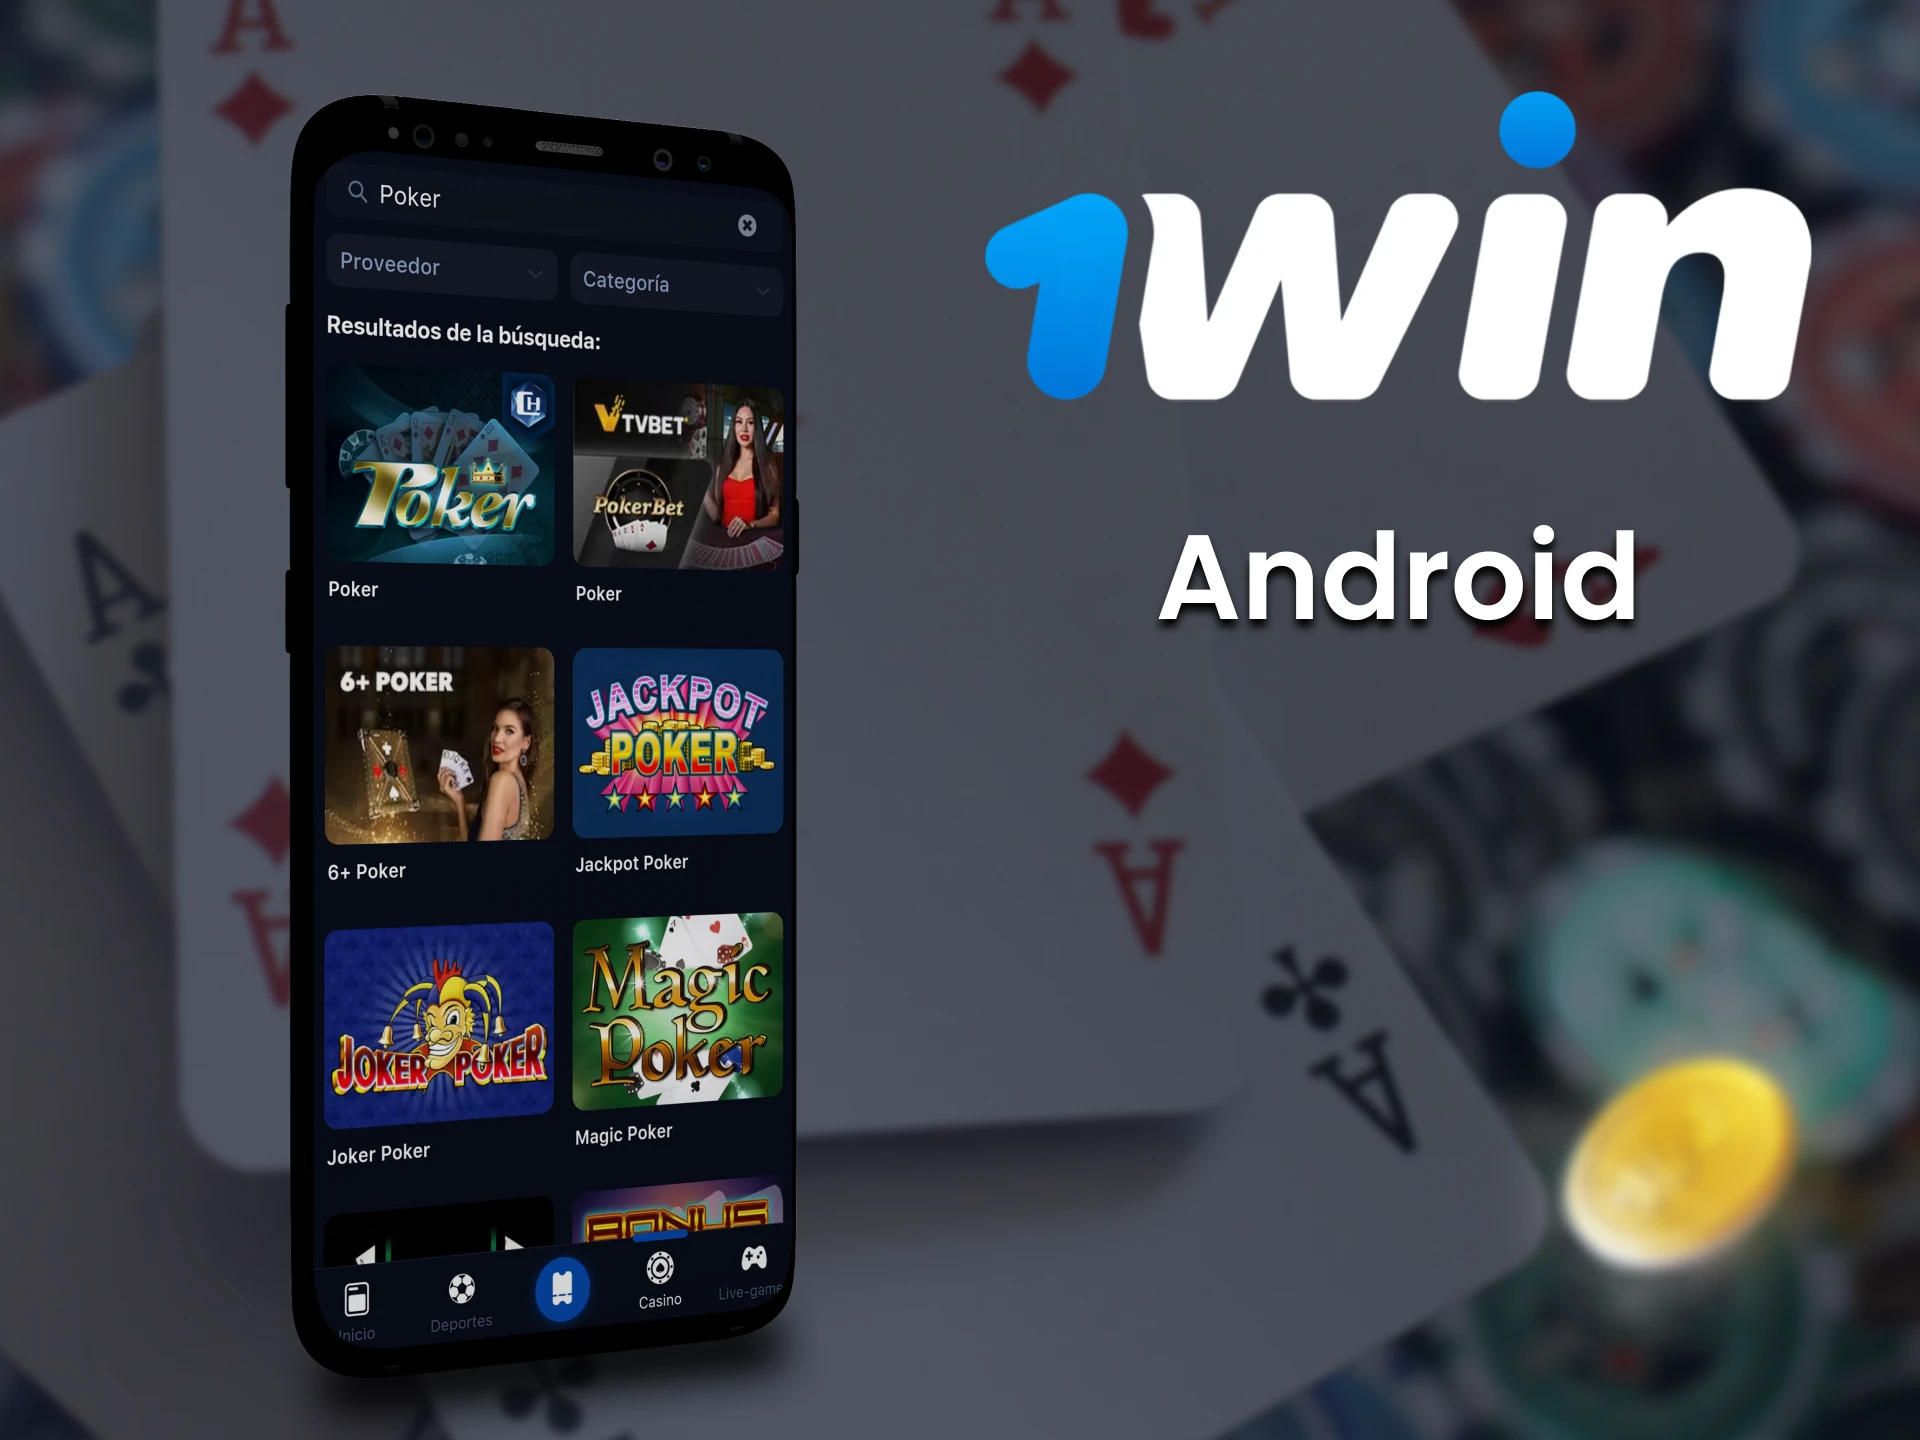 Juega al póquer con la aplicación 1win para Android.